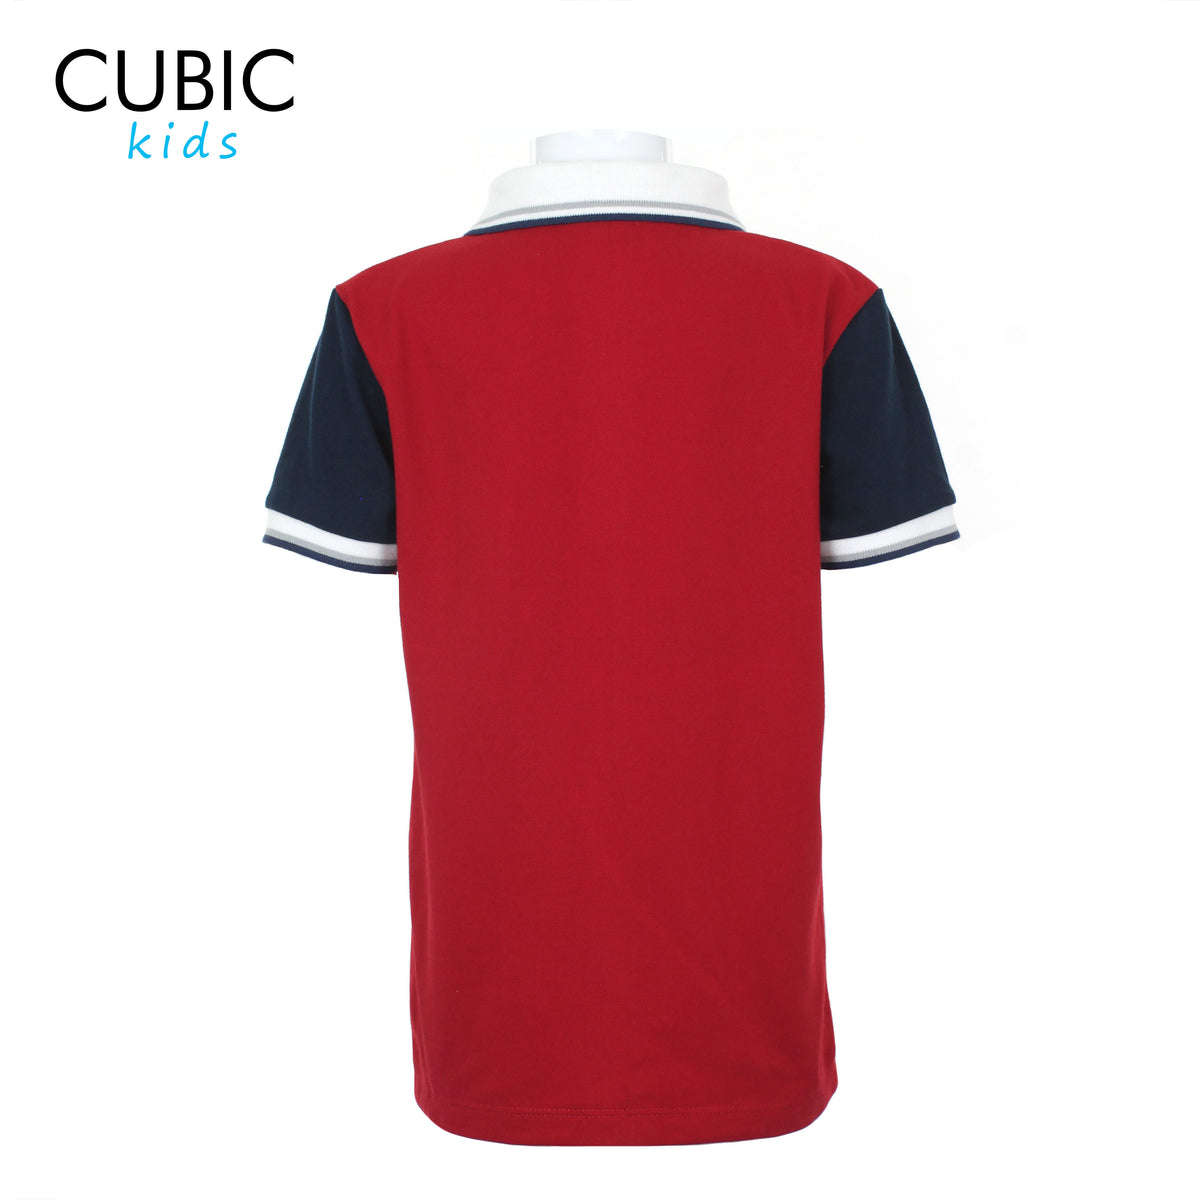 Cubic Boys Kids Pique Polo Shirt Polo-Shirt Collar Top Top for Boys - CKP2220H